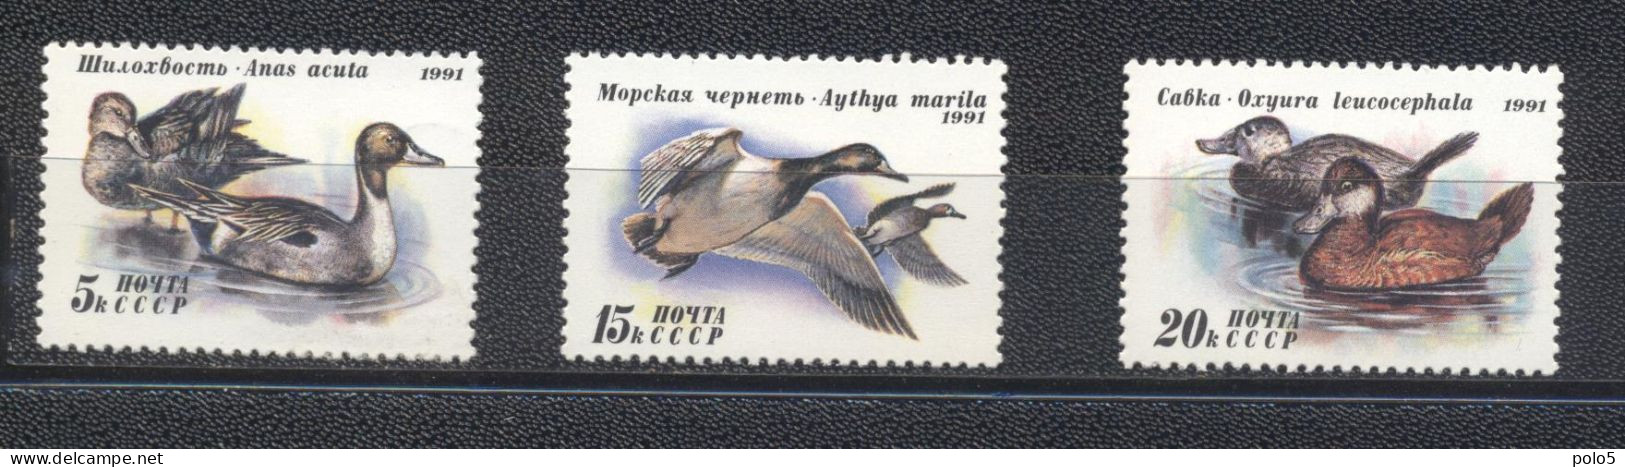 URSS 1991-Ducks  Set (3v) - Unused Stamps